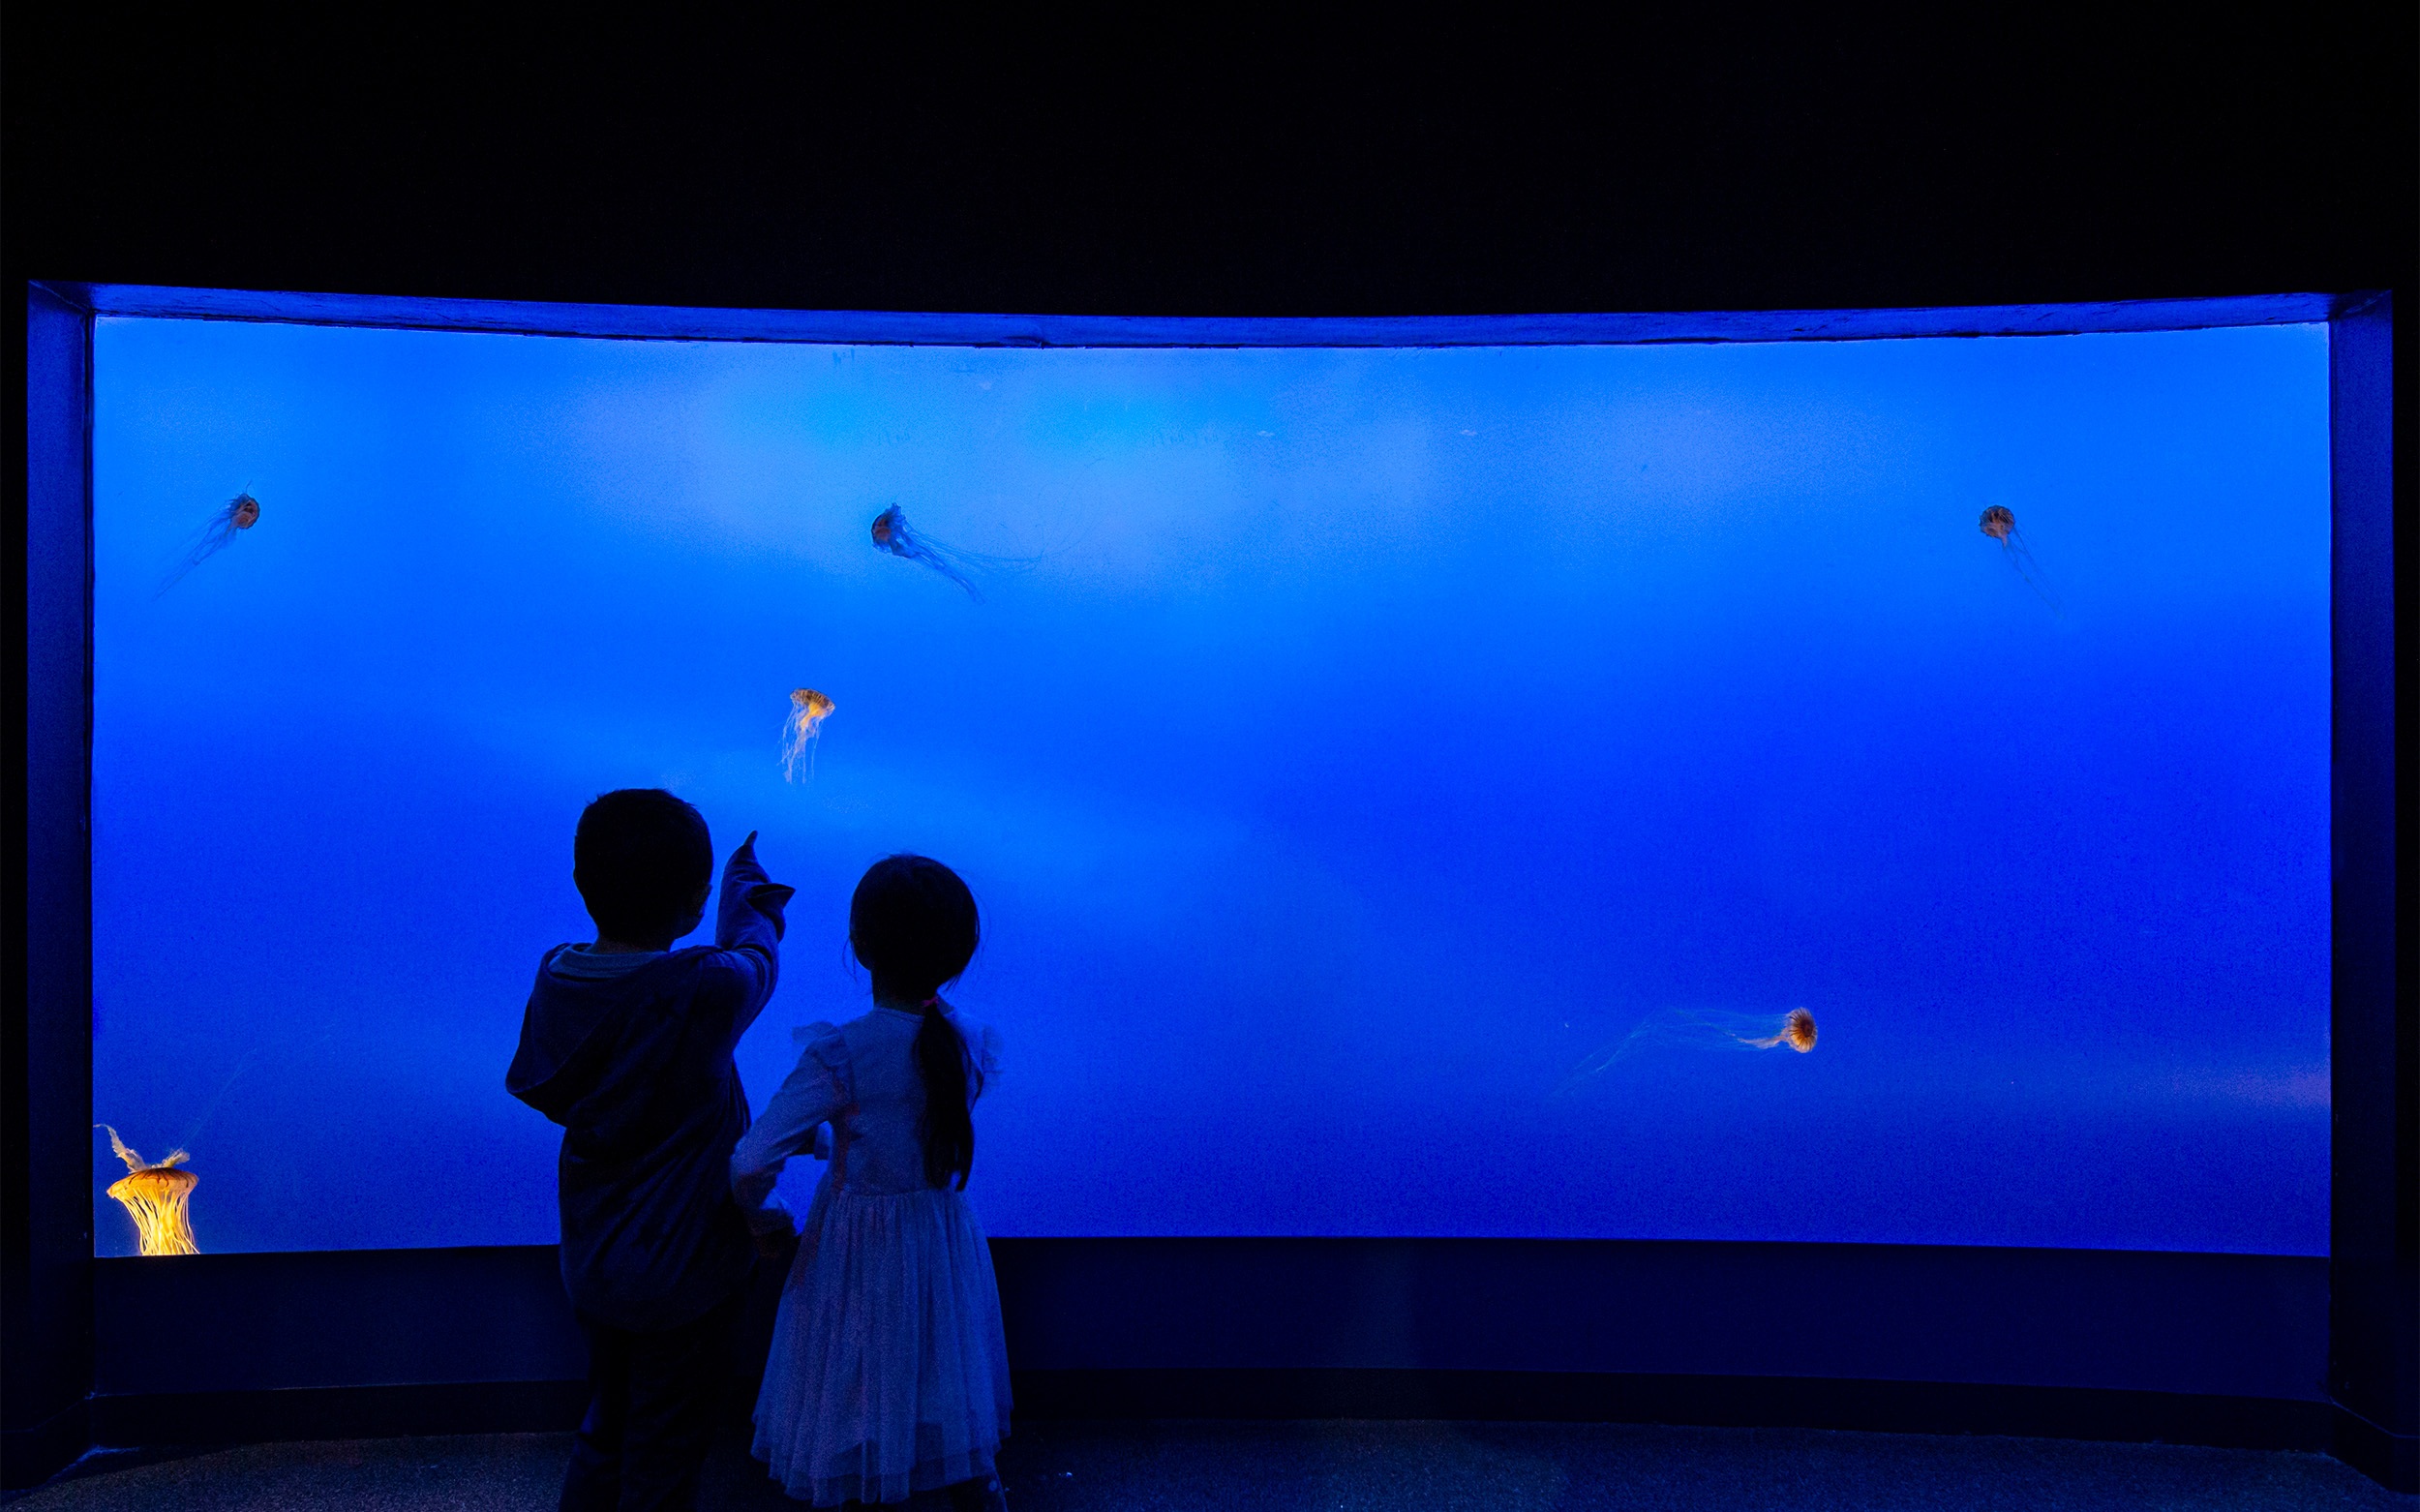 Children looking a at fish in the aquarium